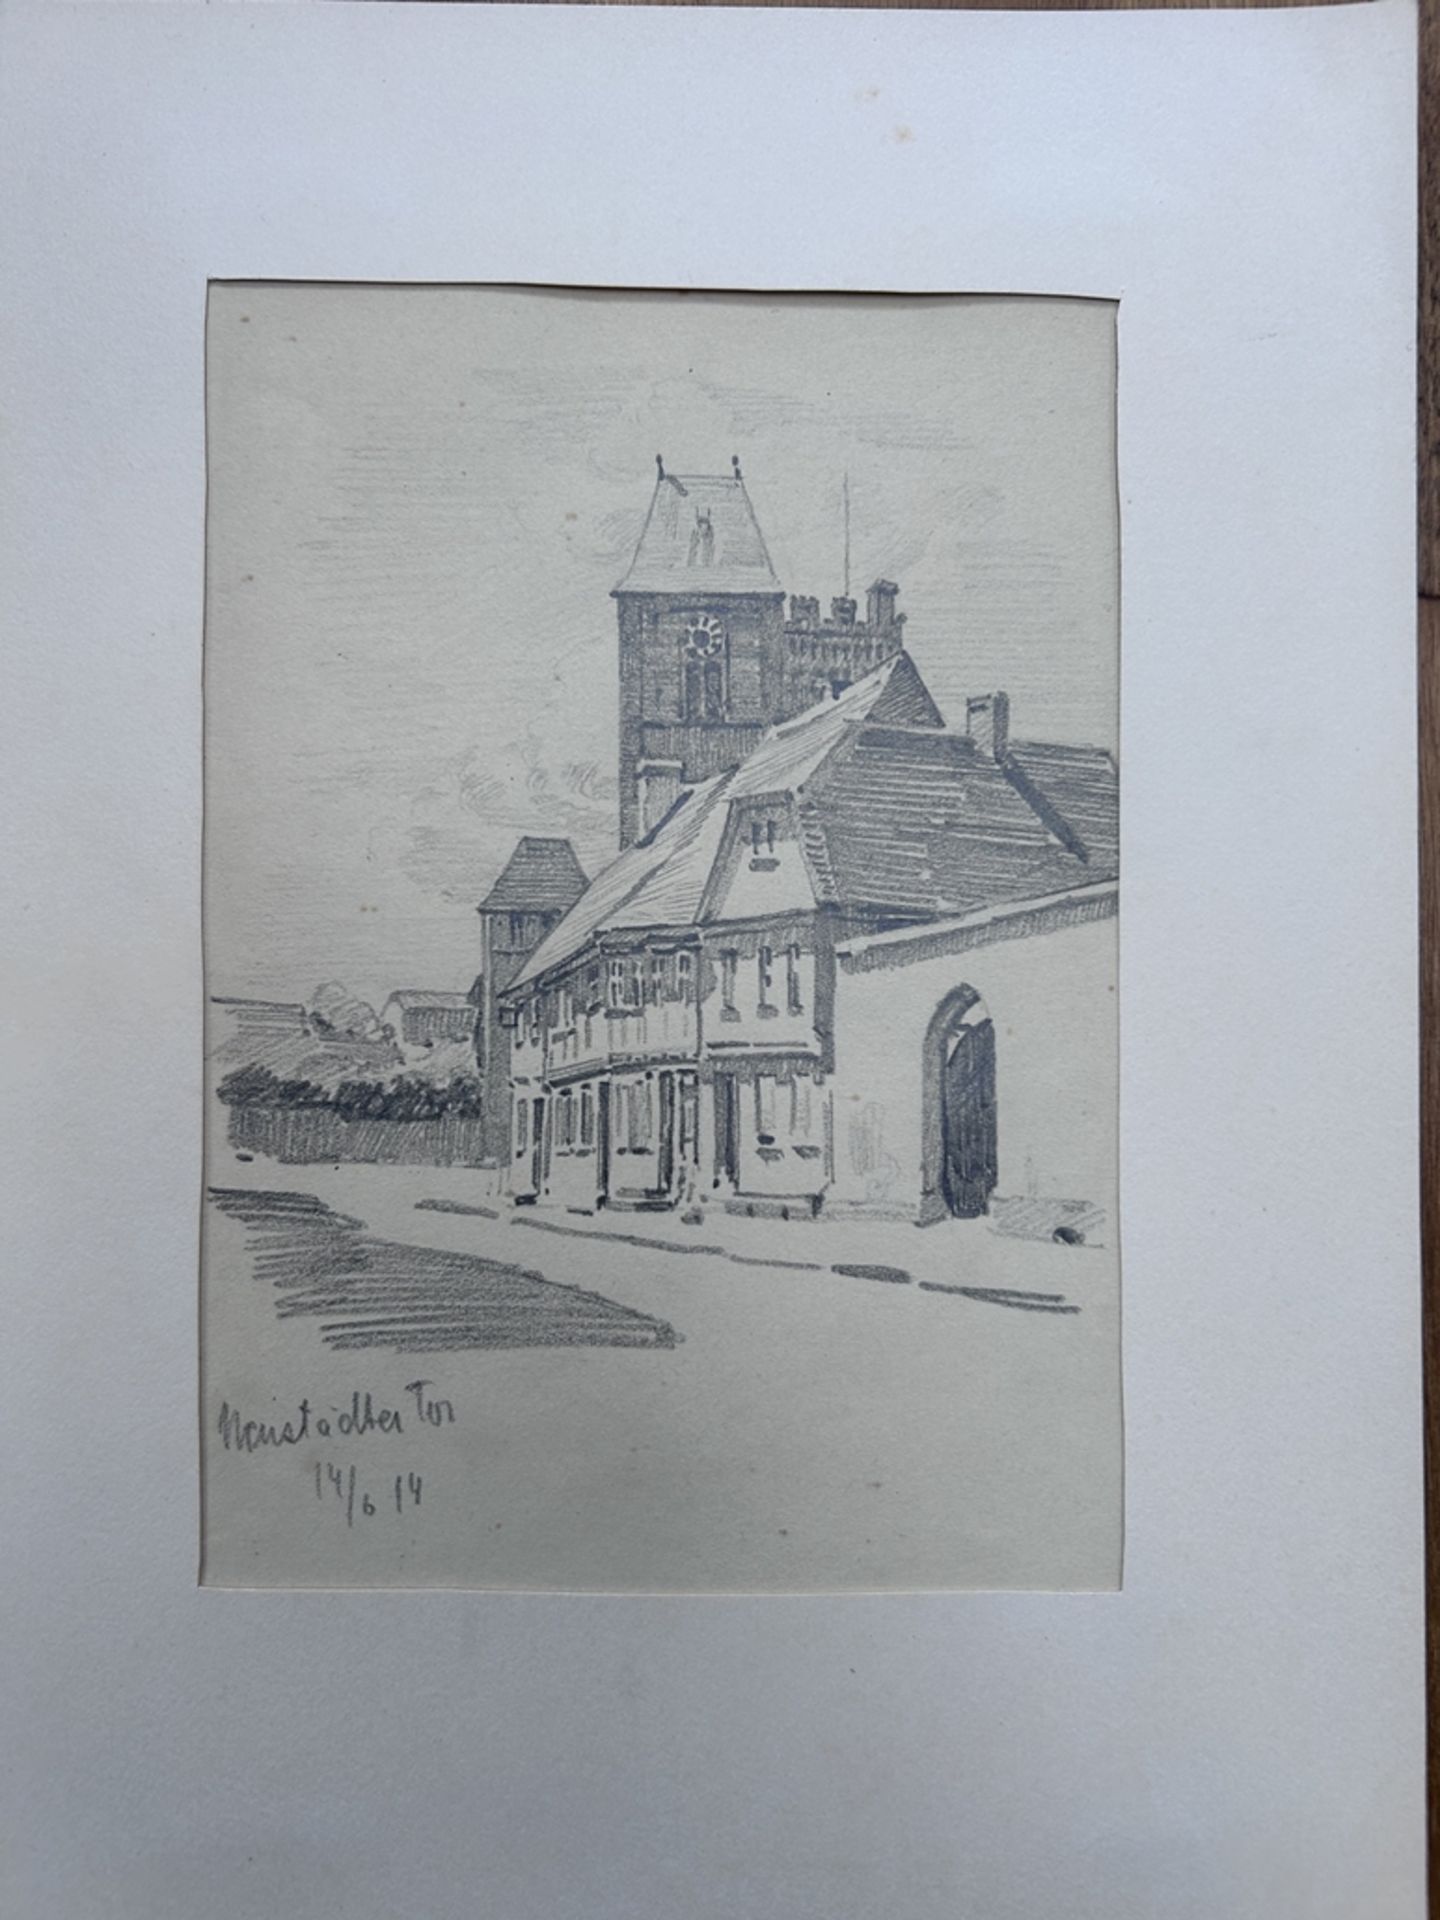 ER, 1914, 2x Stiftzeichnungen, wohl beide Gießen, 1x Neustädter Tor in PP., BG je. 30x23 cm - Bild 2 aus 5